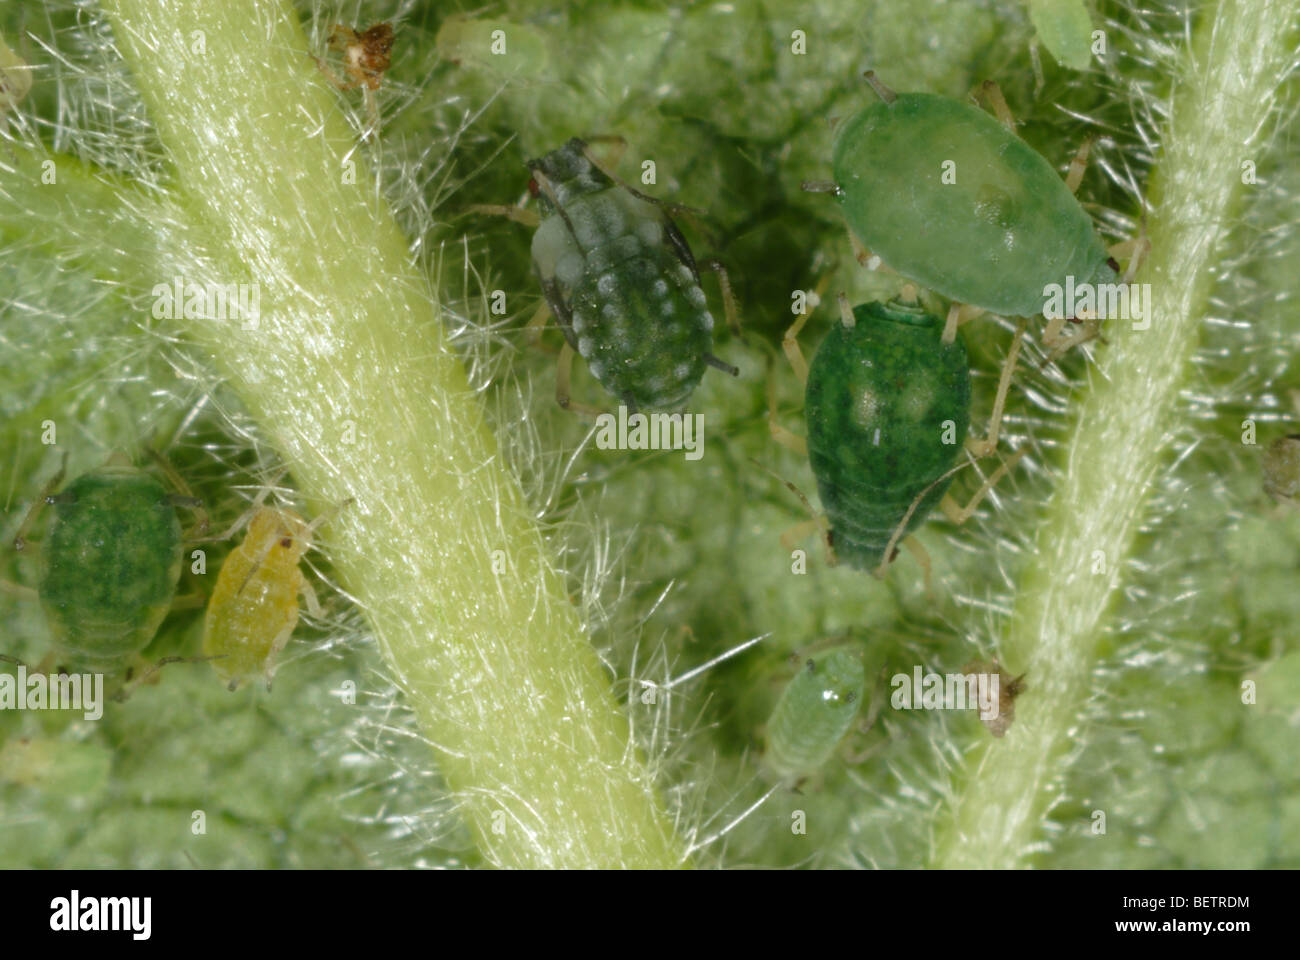 Afide del cotone (Aphis gossypii) femmine adulte e immatures su una foglia di blackberry Foto Stock